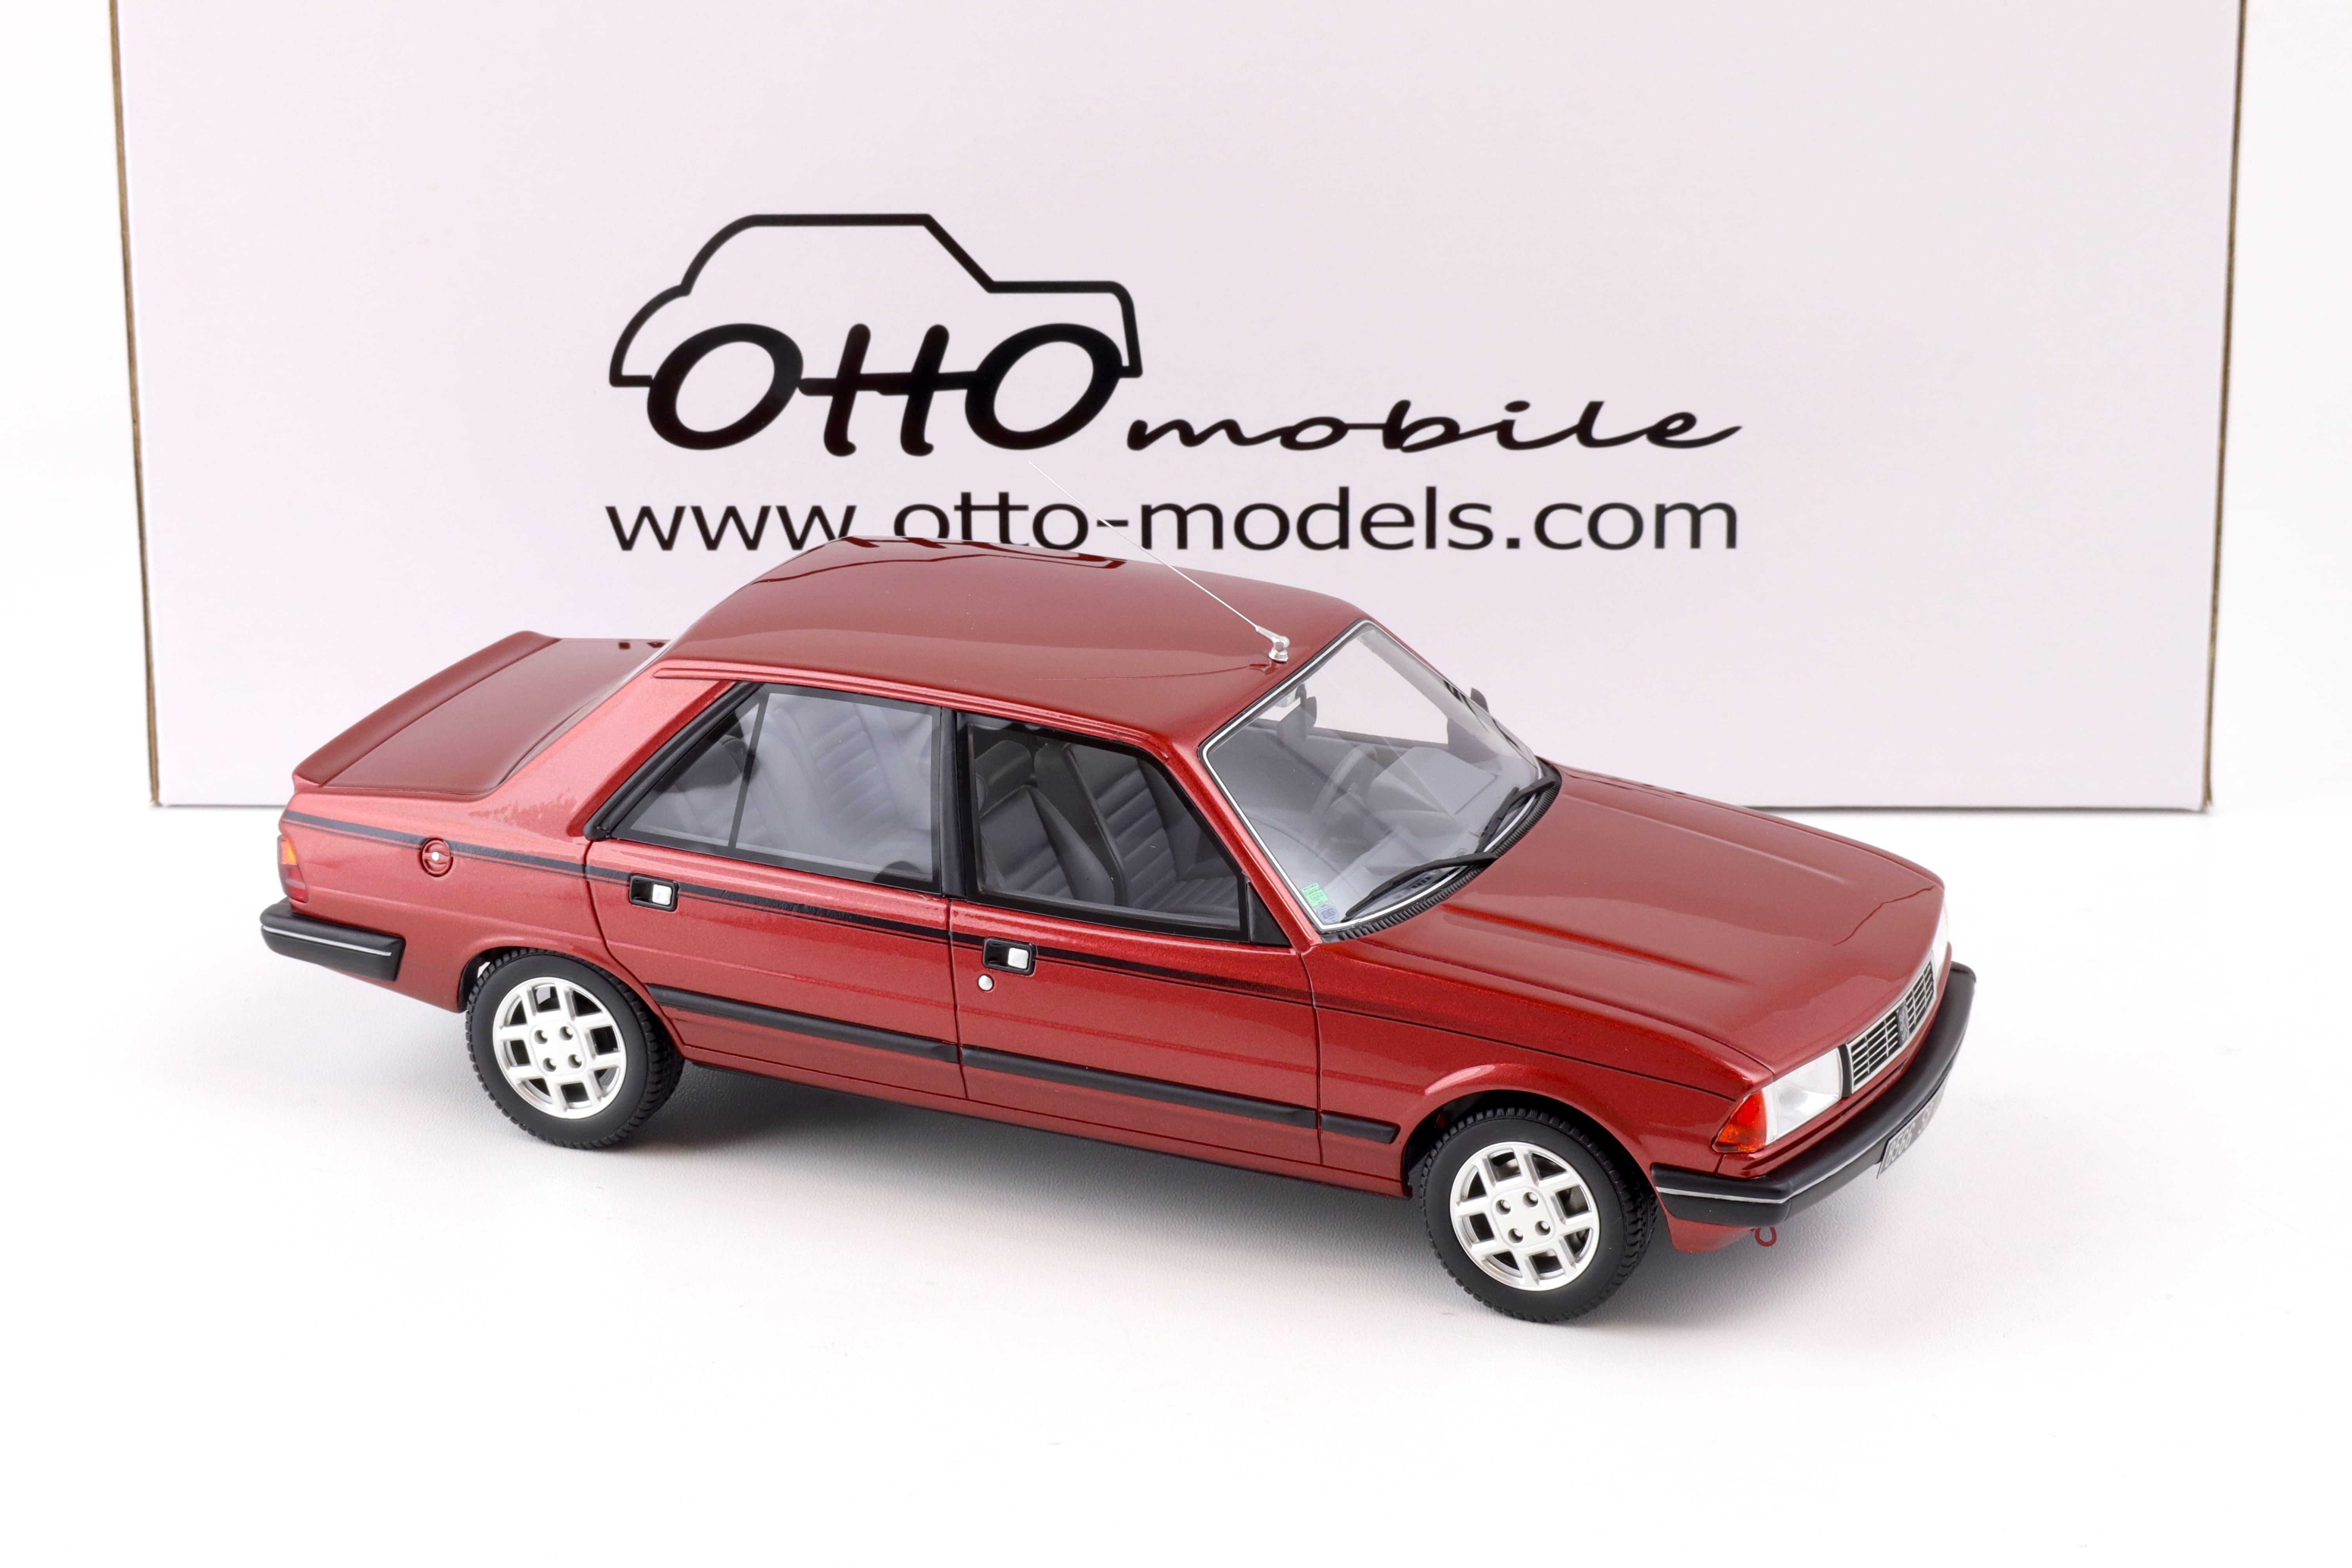 1:18 OTTO mobile OT1032 Peugeot 305 GTX Limousine red 1985